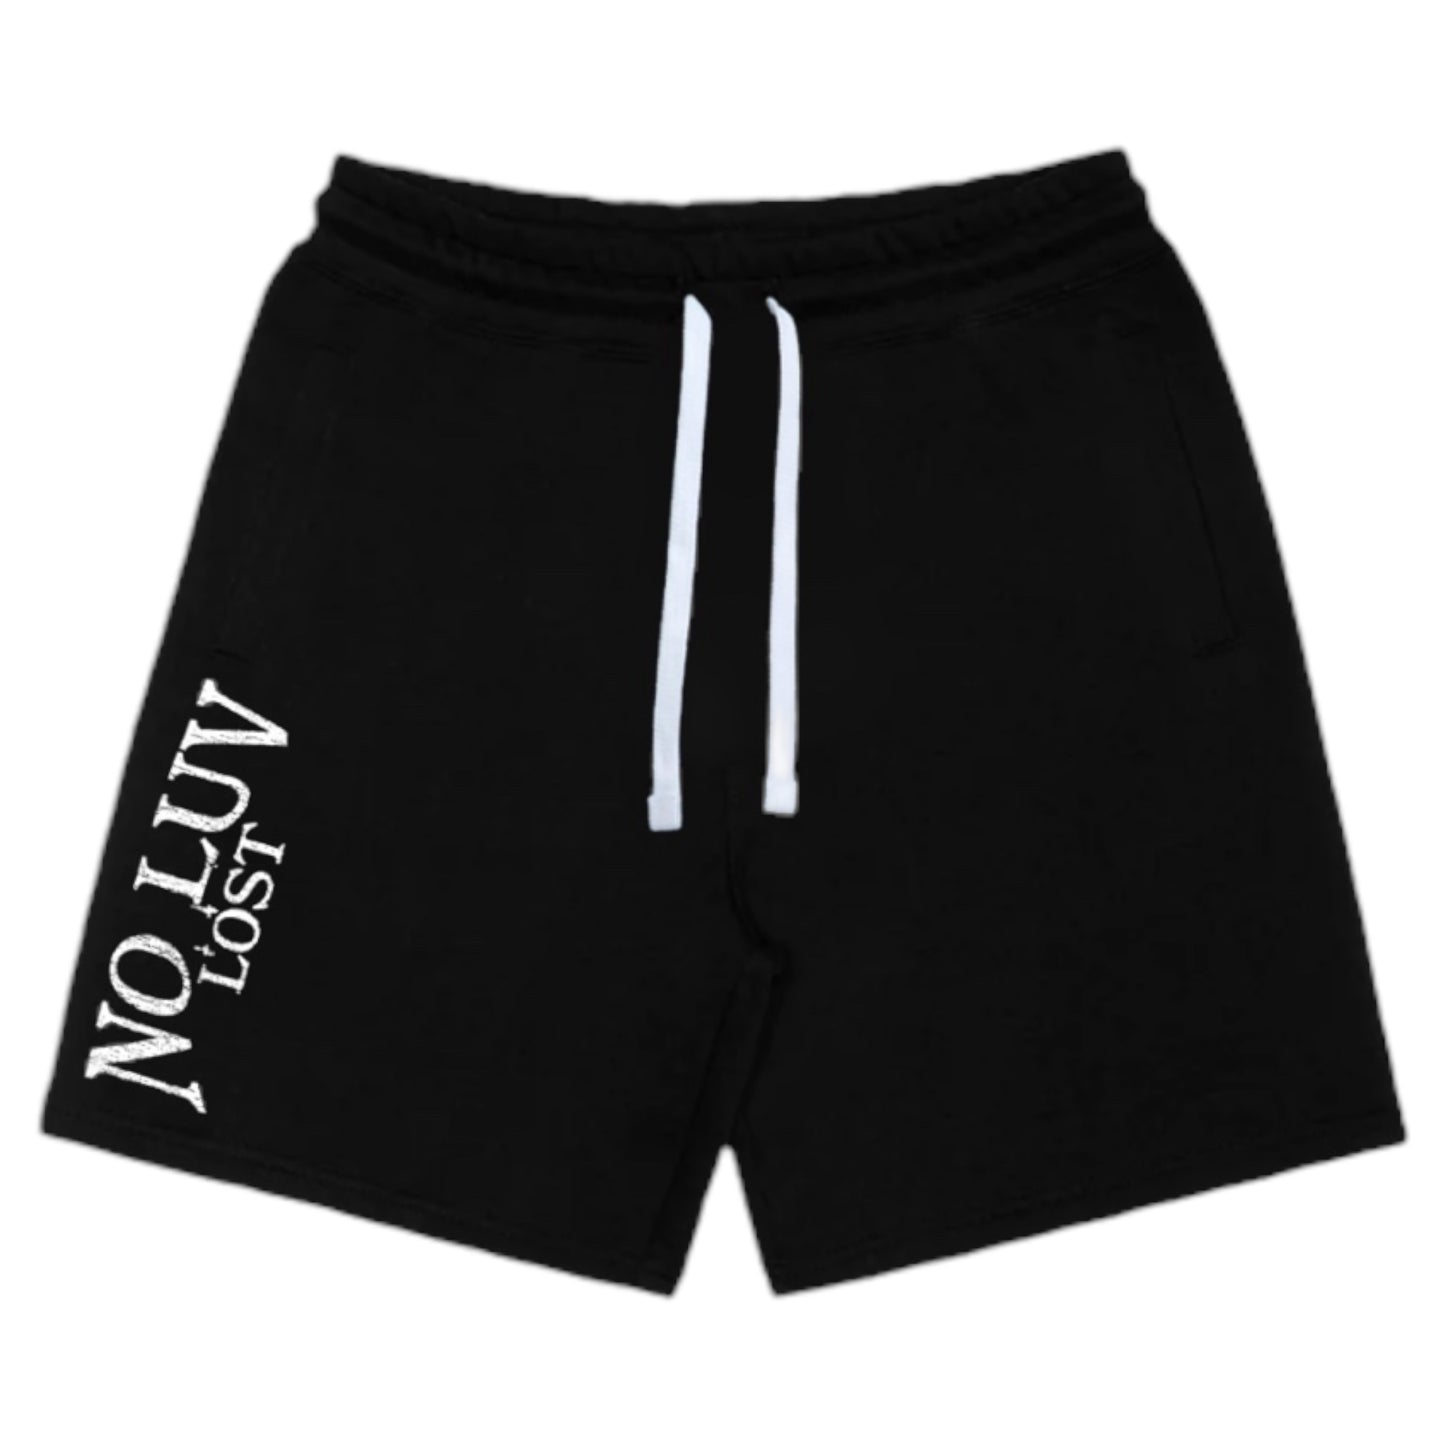 NLL shorts (Black/White)